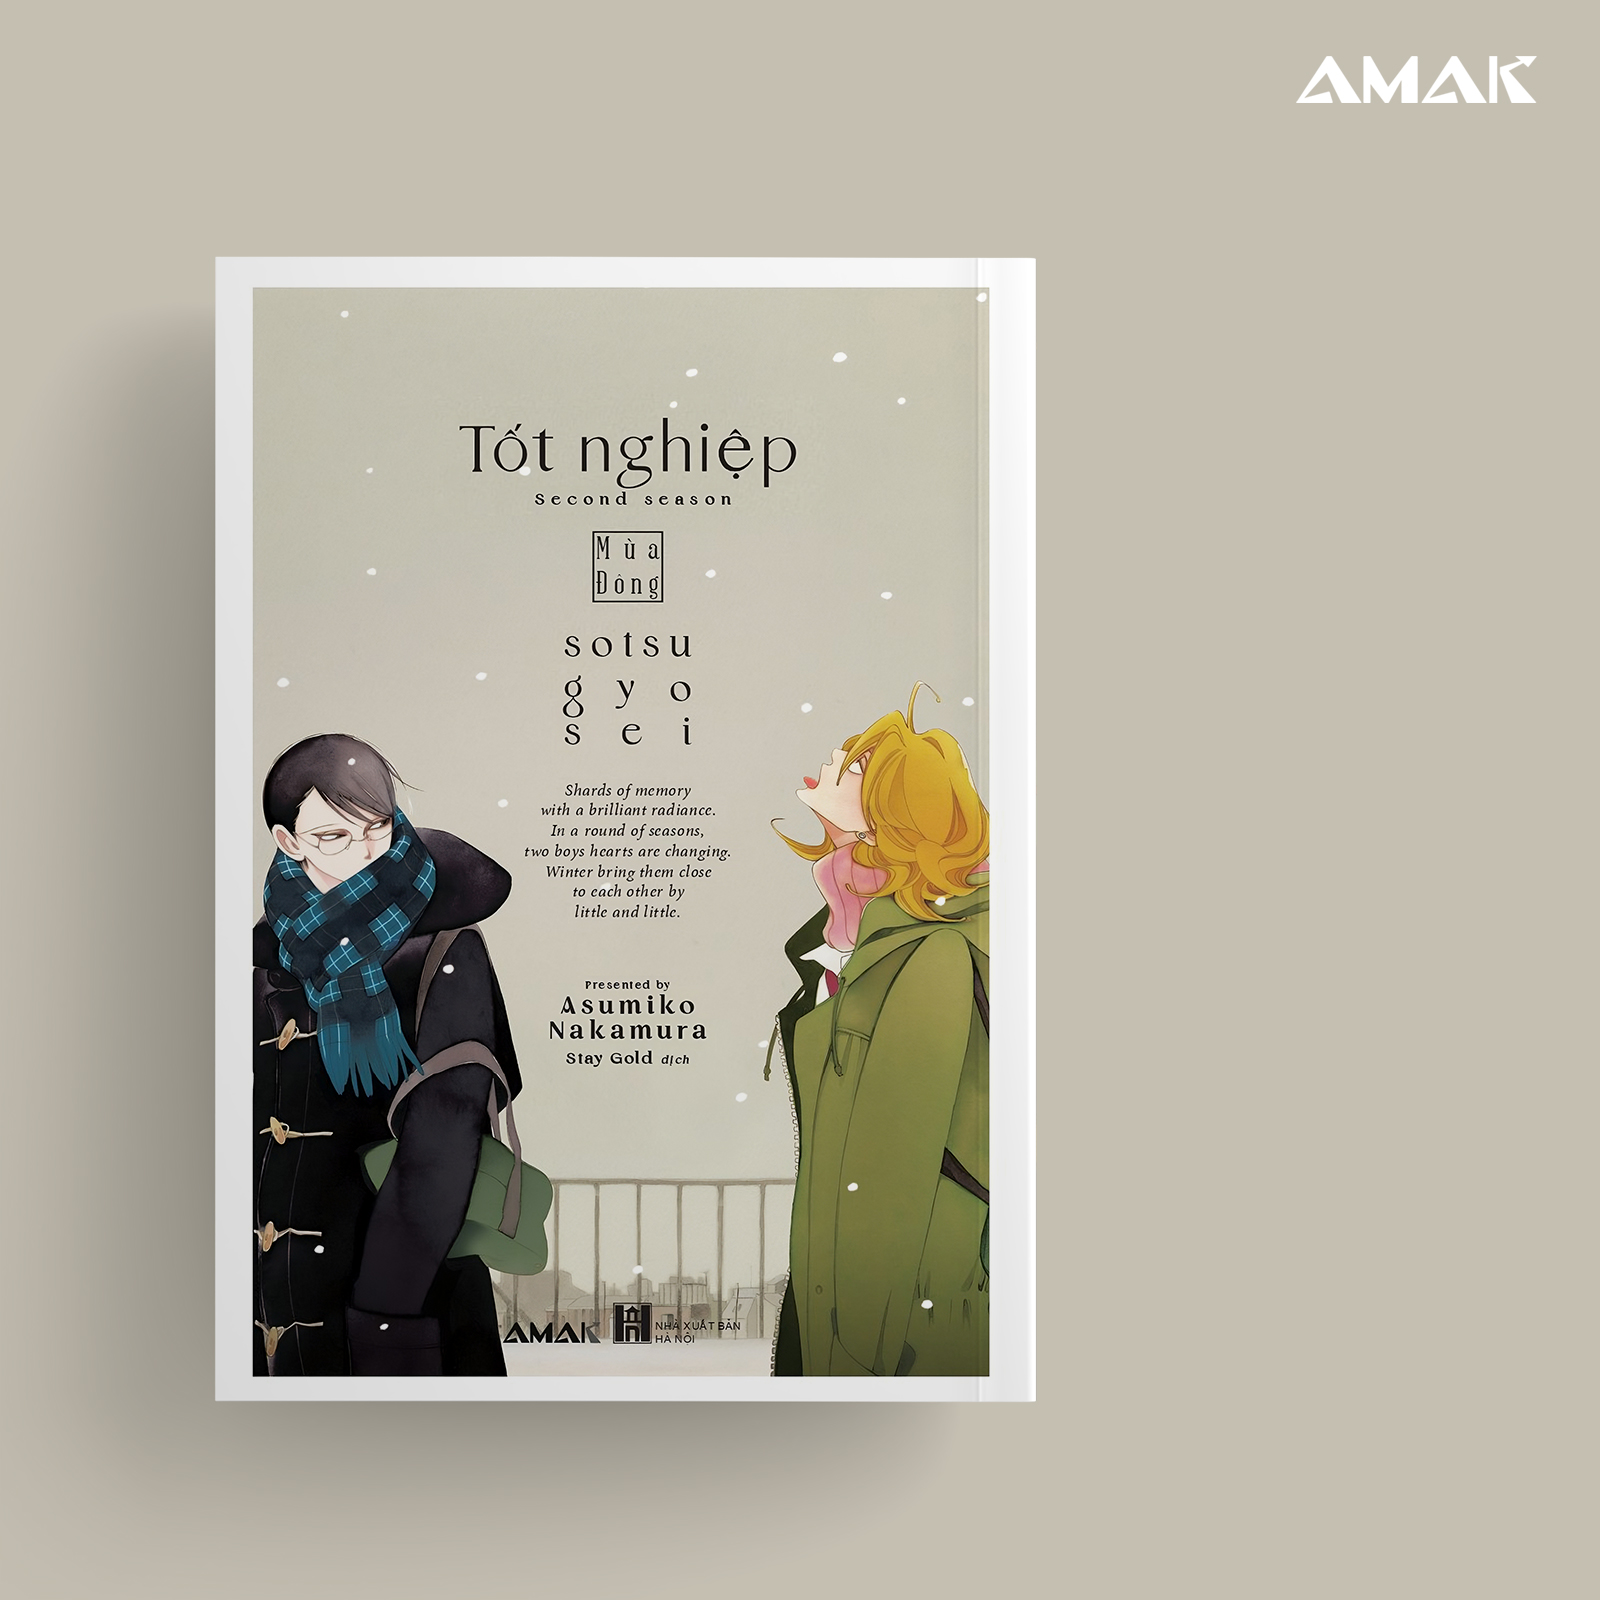 [Manga] Tốt nghiệp - Mùa đông - Tác giả: Asumiko Nakamura - Amakbooks